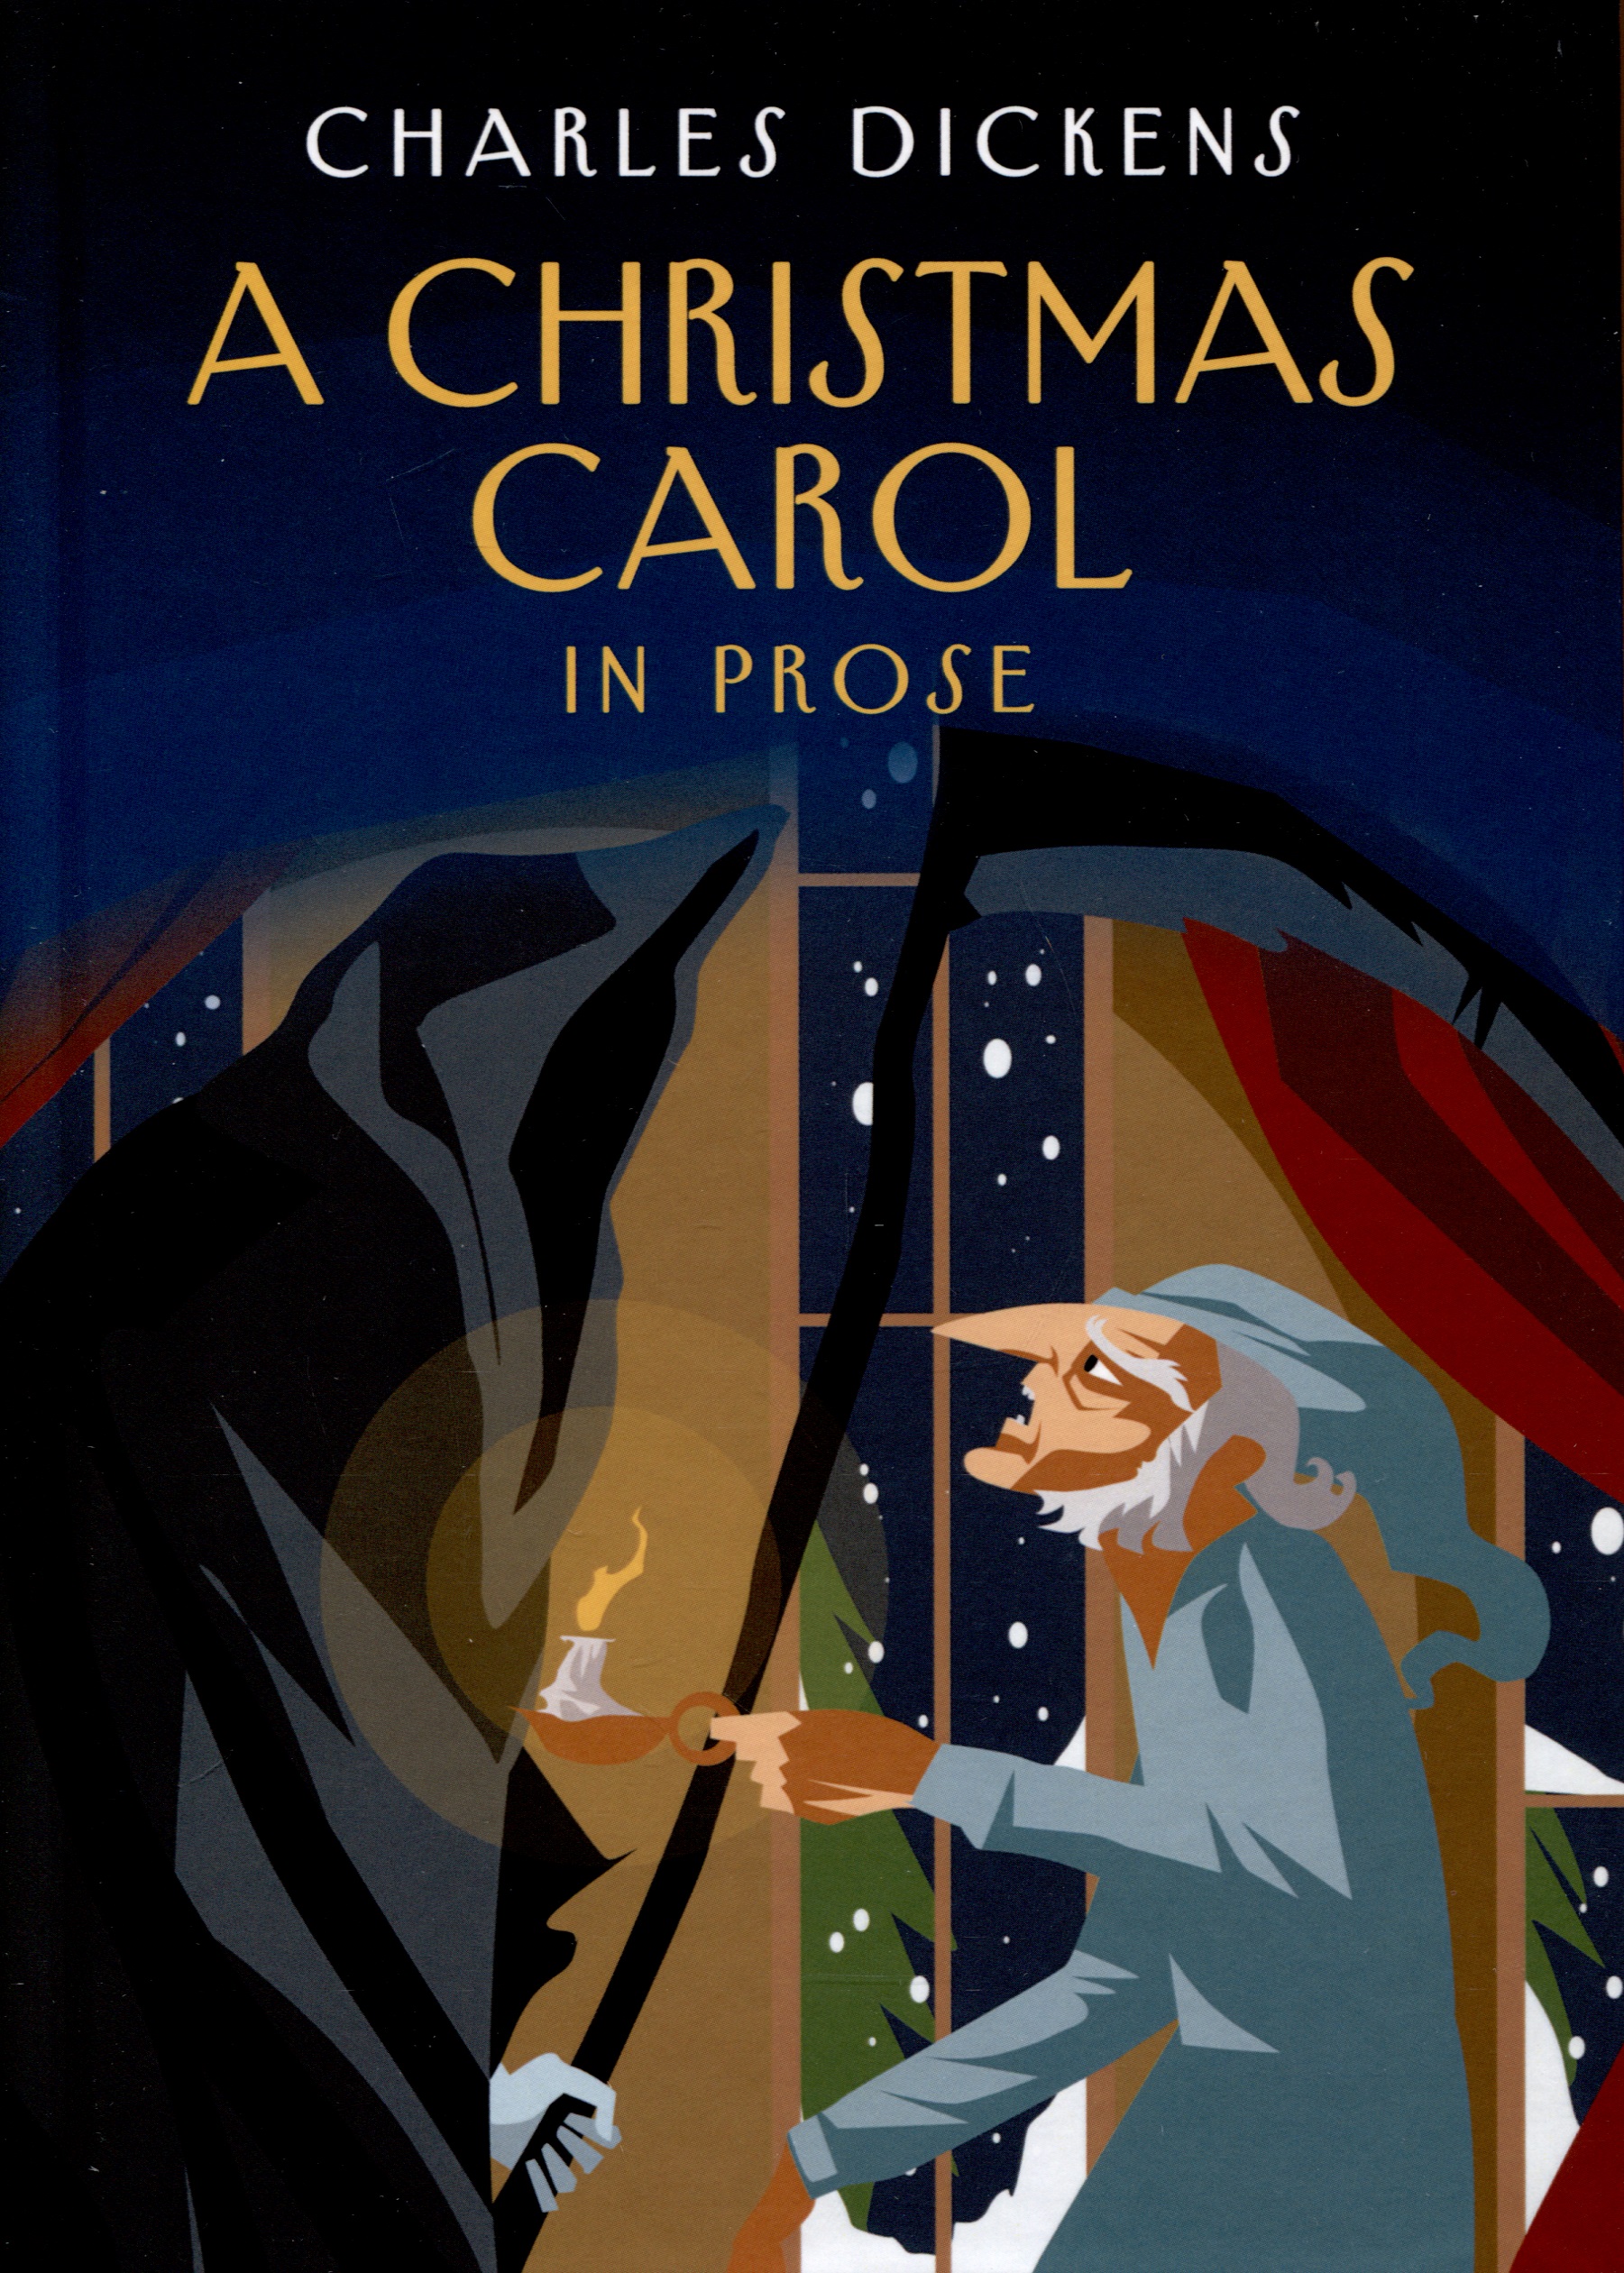 A Christmas Carol in Prose. Being a Ghost Story of Christmas диккенс чарльз рождественская песнь в прозе святочный рассказ с привидениями повесть на англ и русск яз